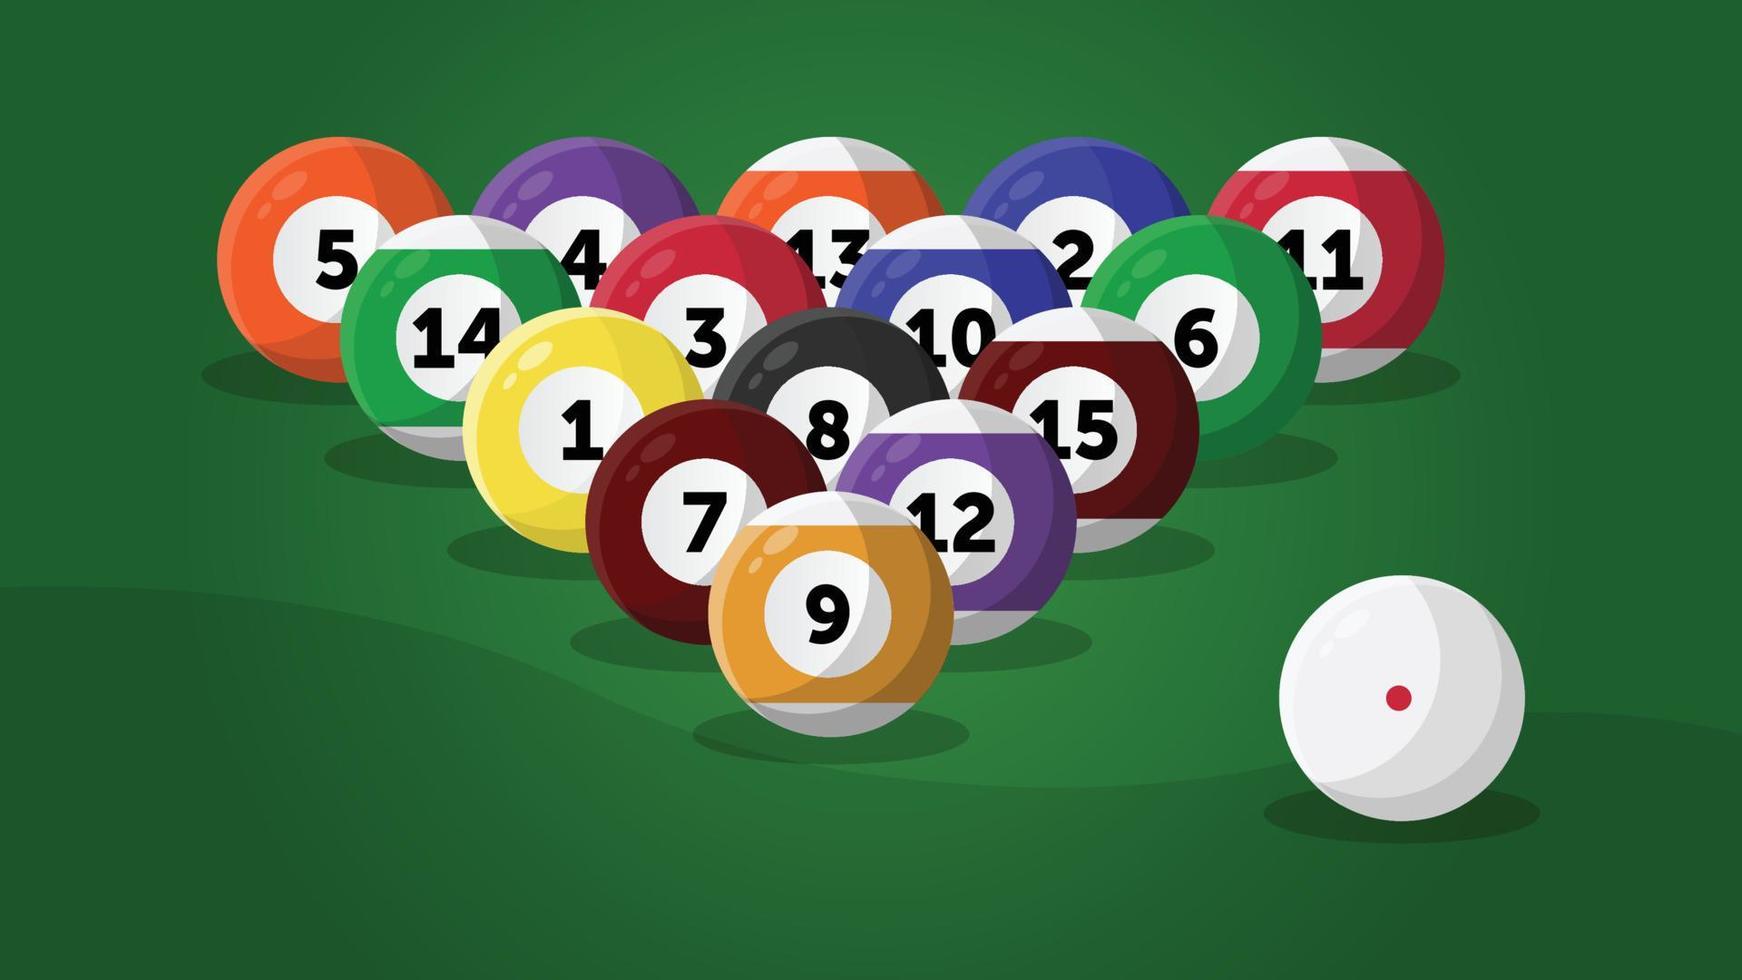 Billiard balls setup on a pool table vector